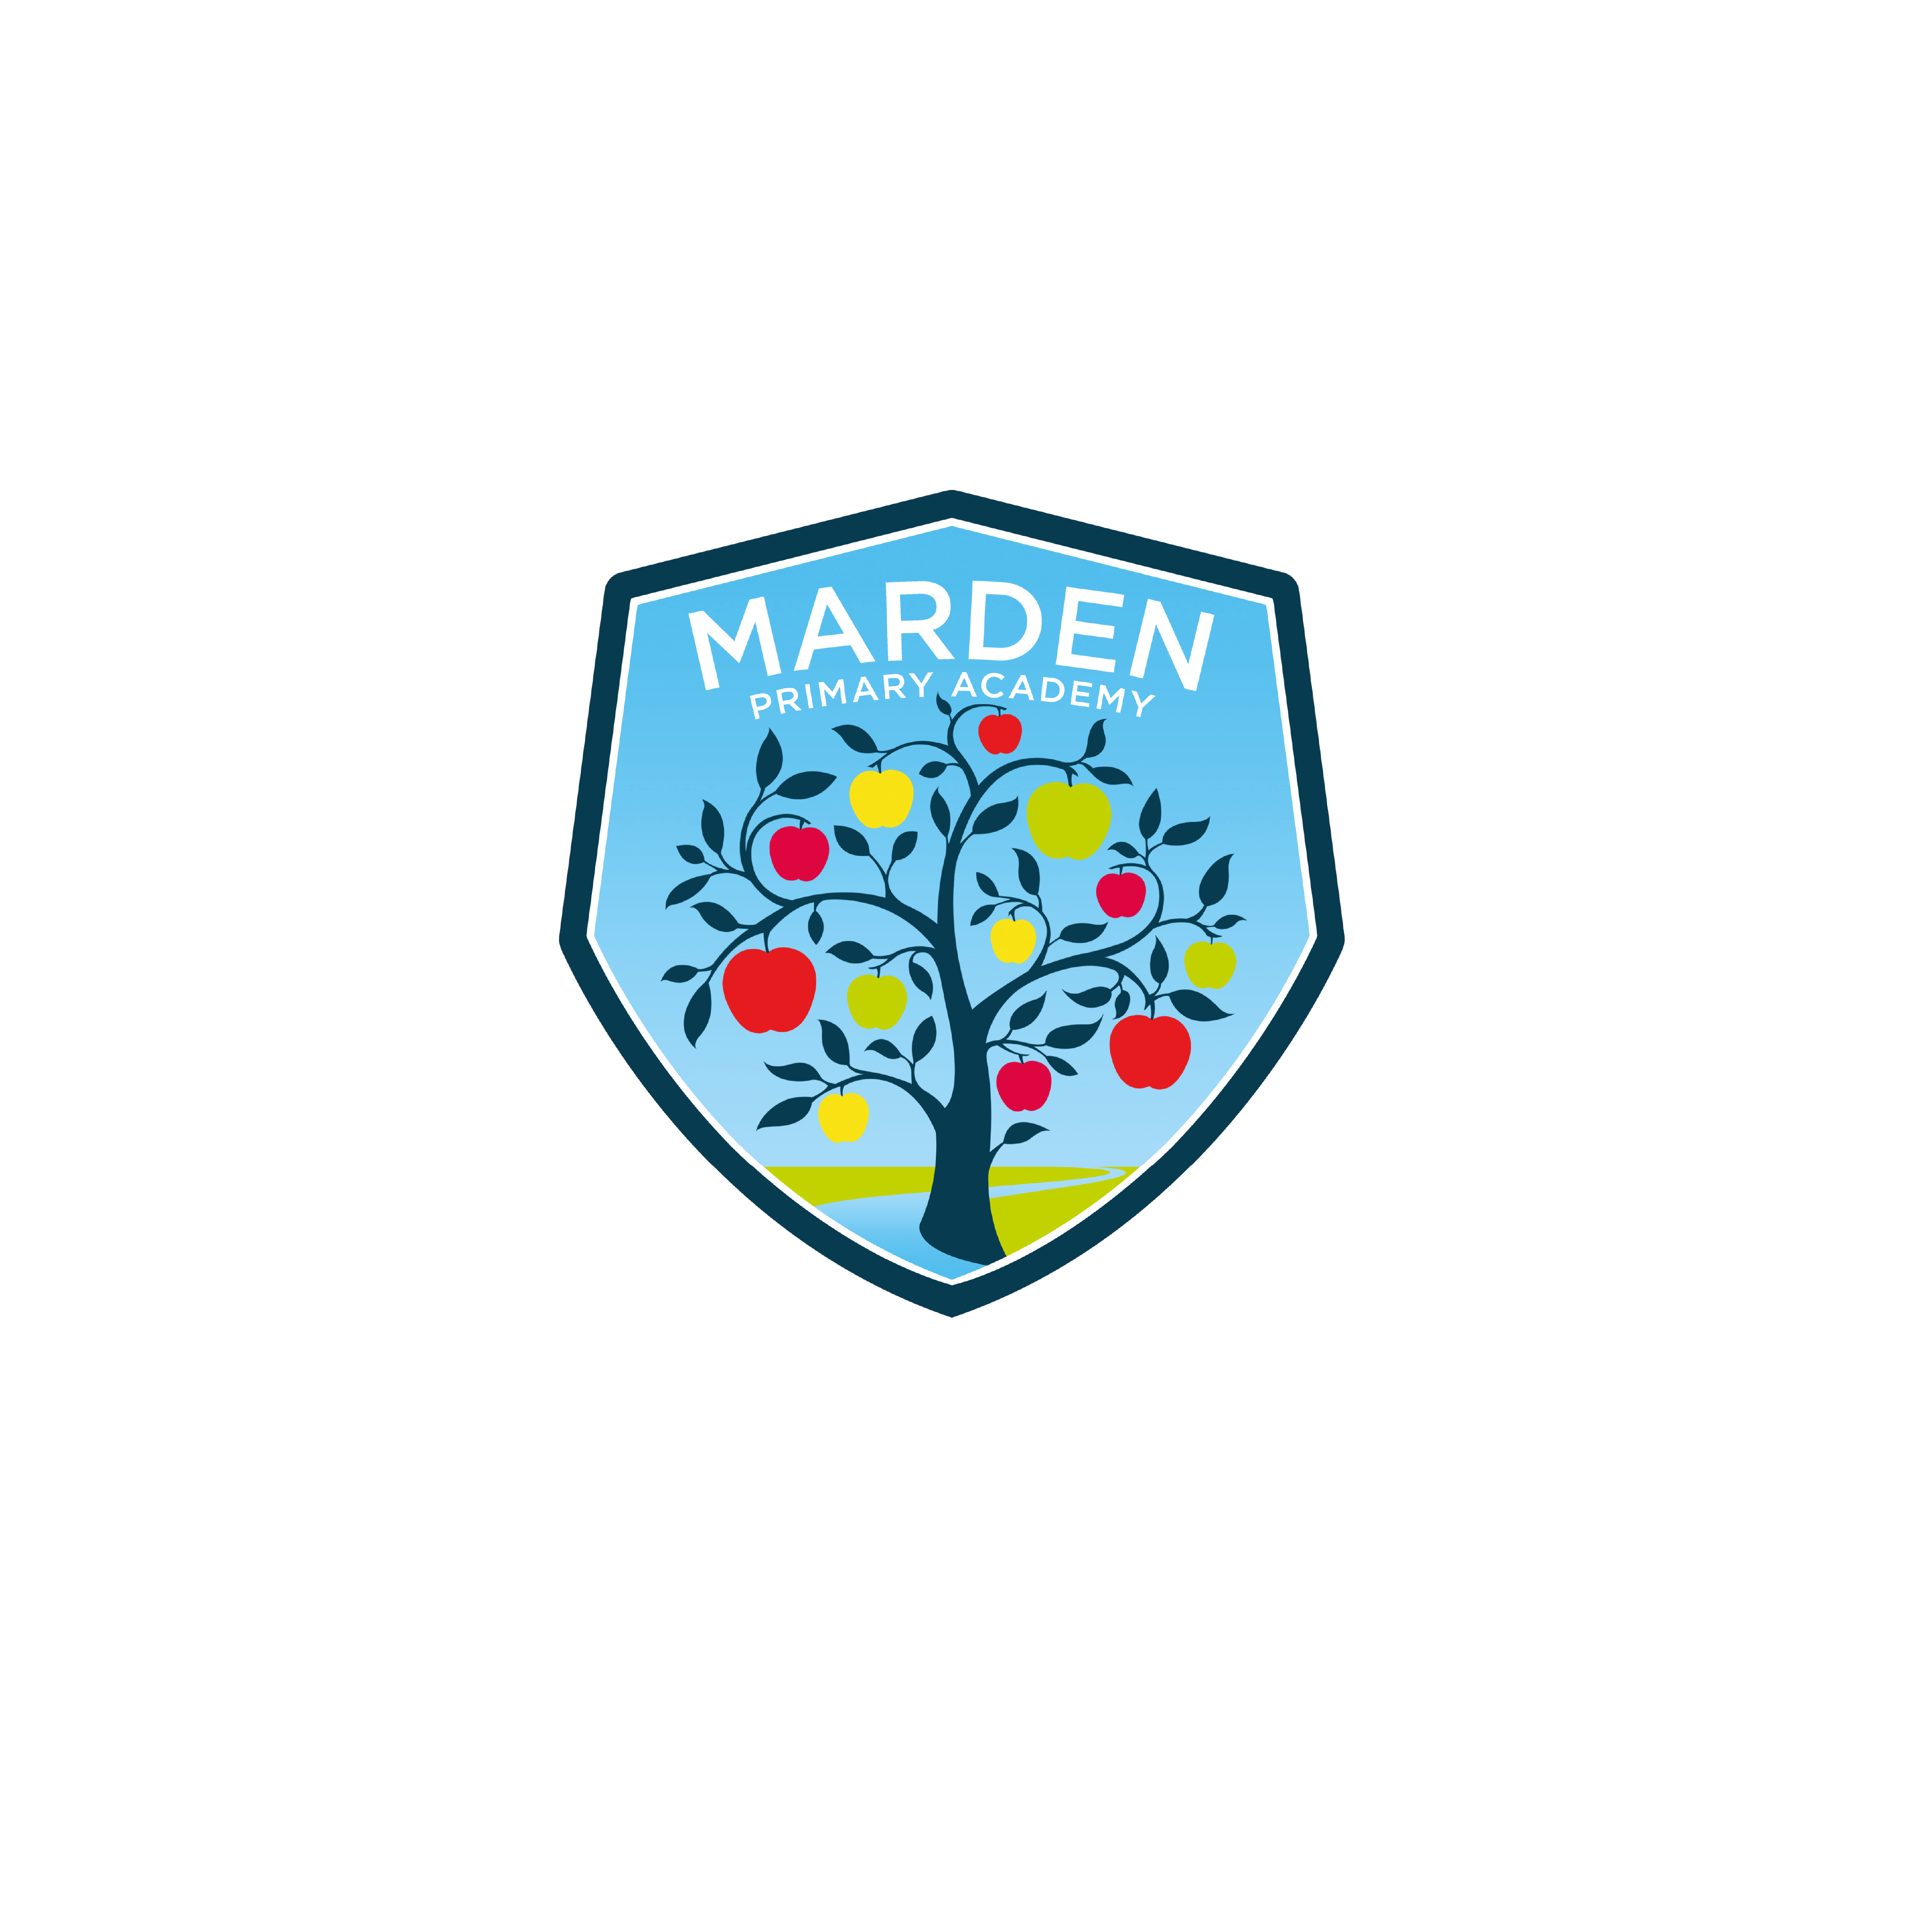 Marden Primary Academy Logo